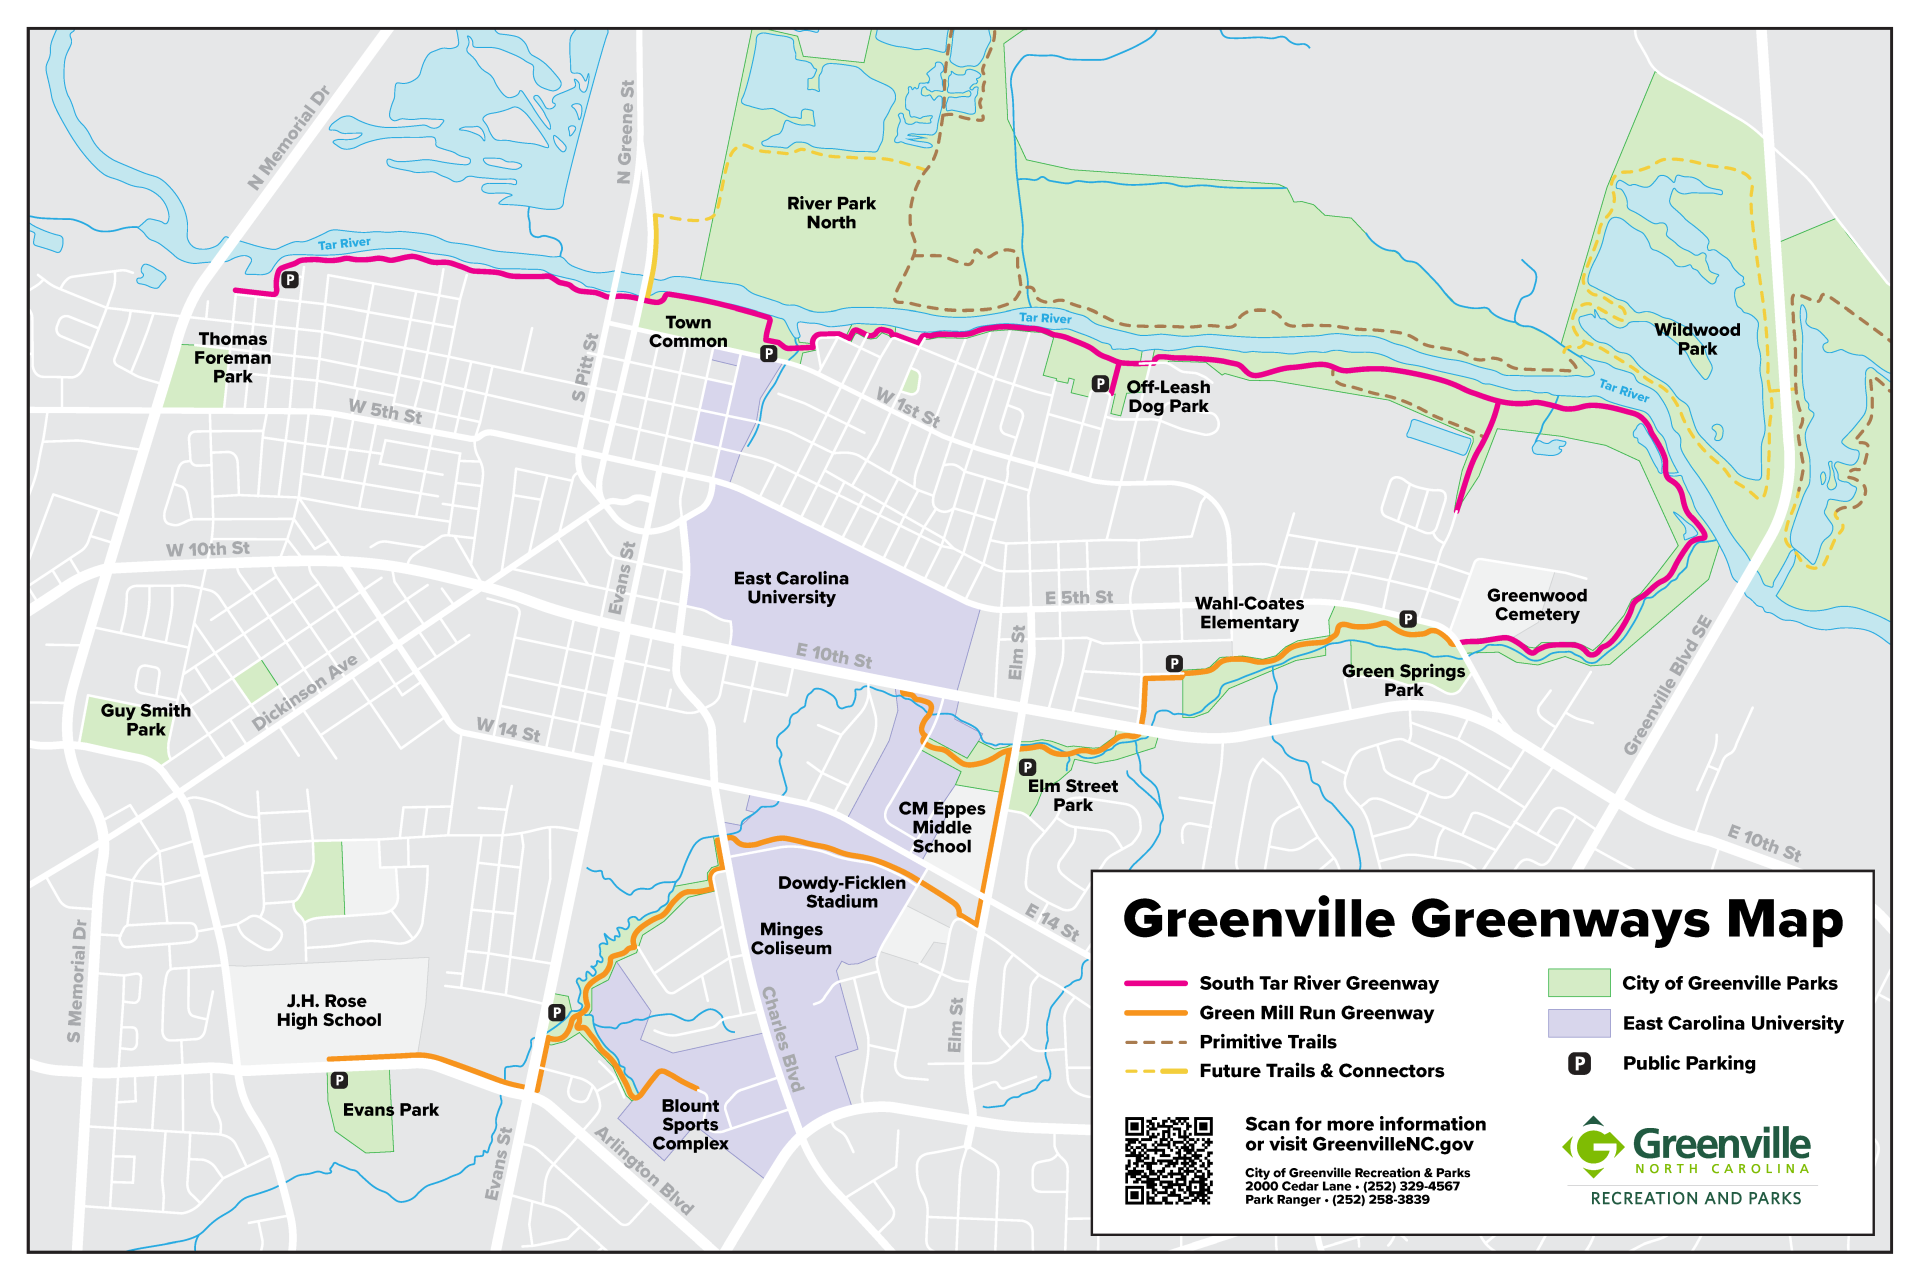 Greenway Map